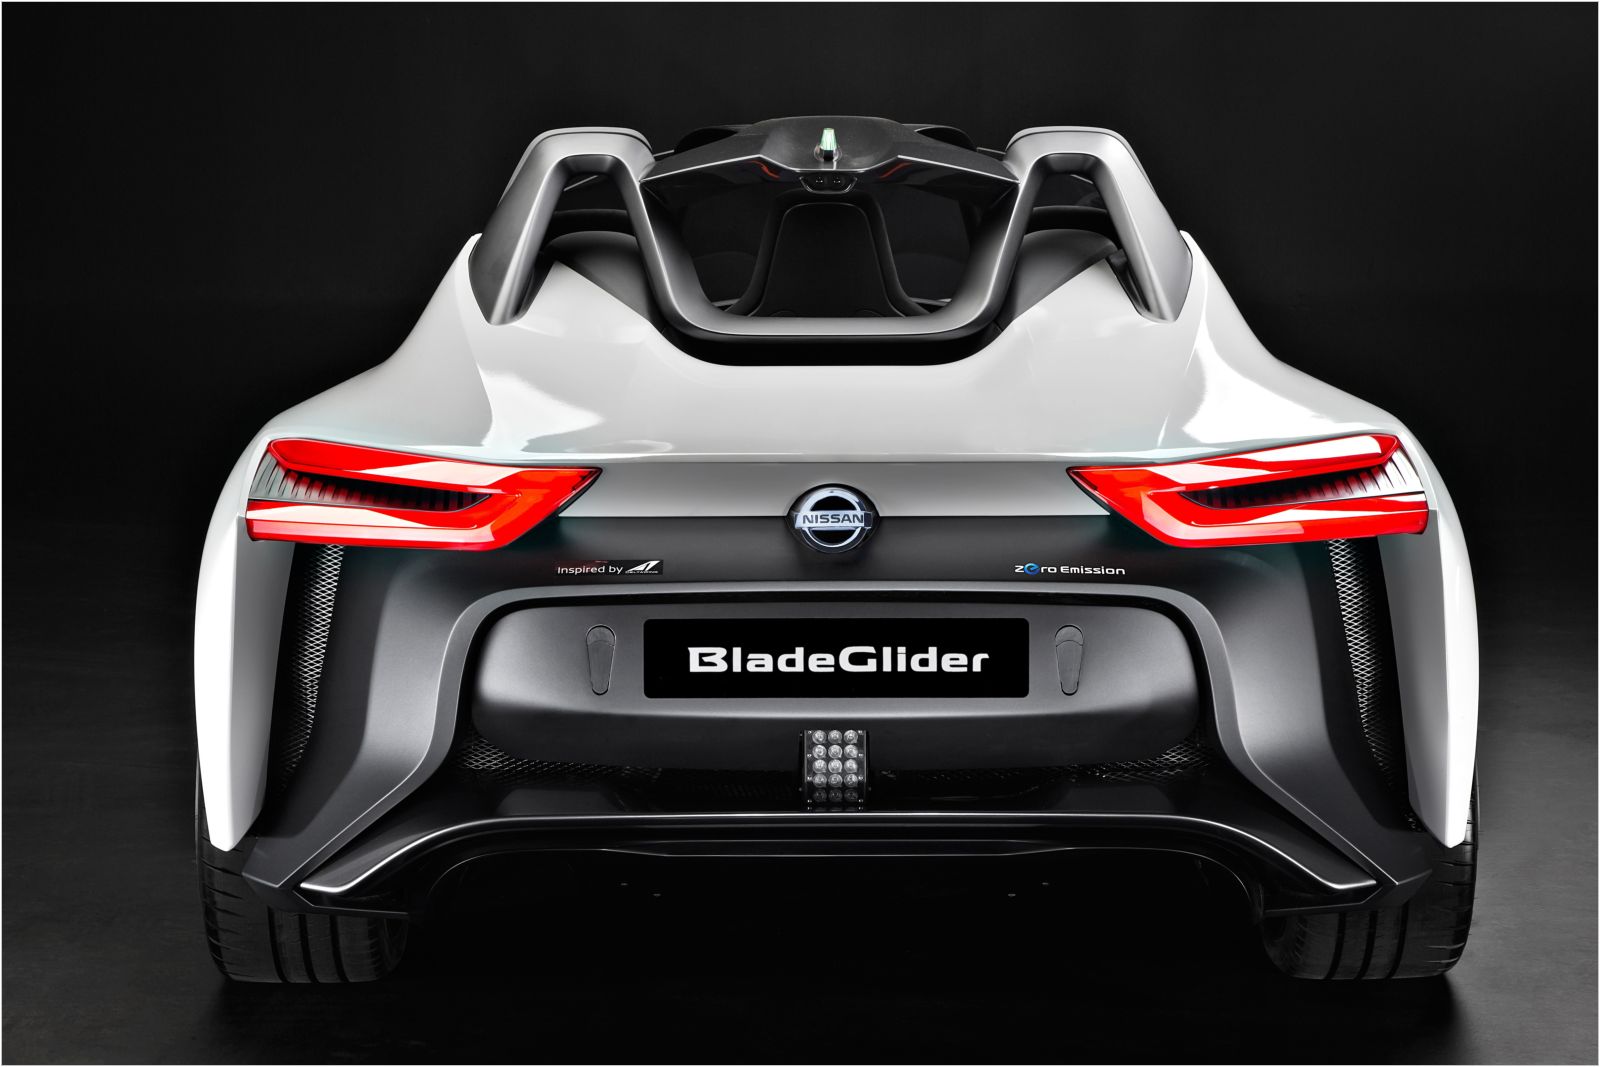 Nissan BladeGlider Concept, 1600x1067px, img-4